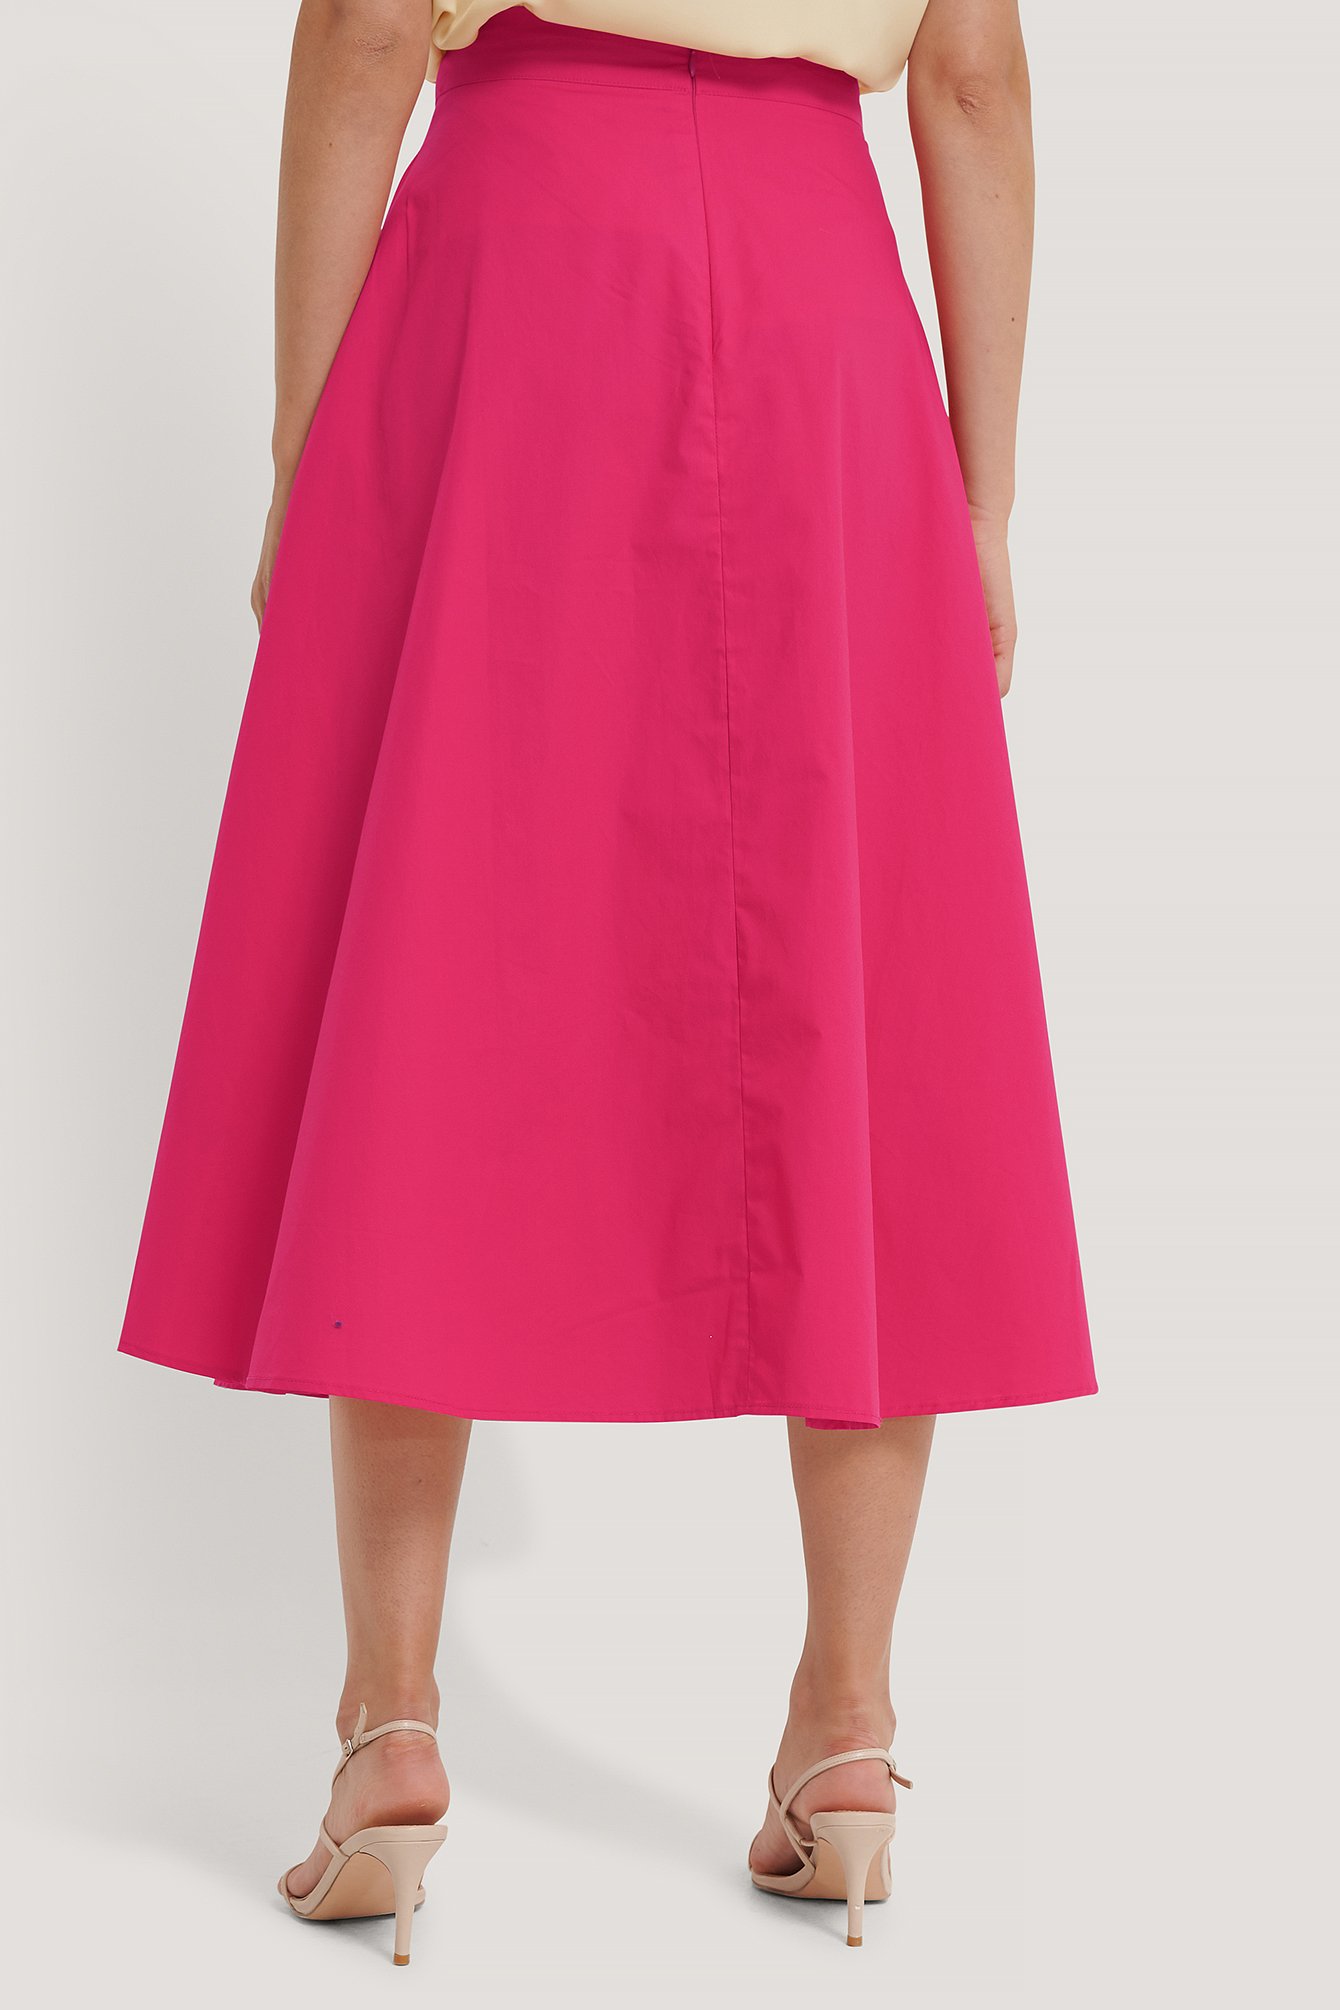 Fuchsia Flowy Skirt